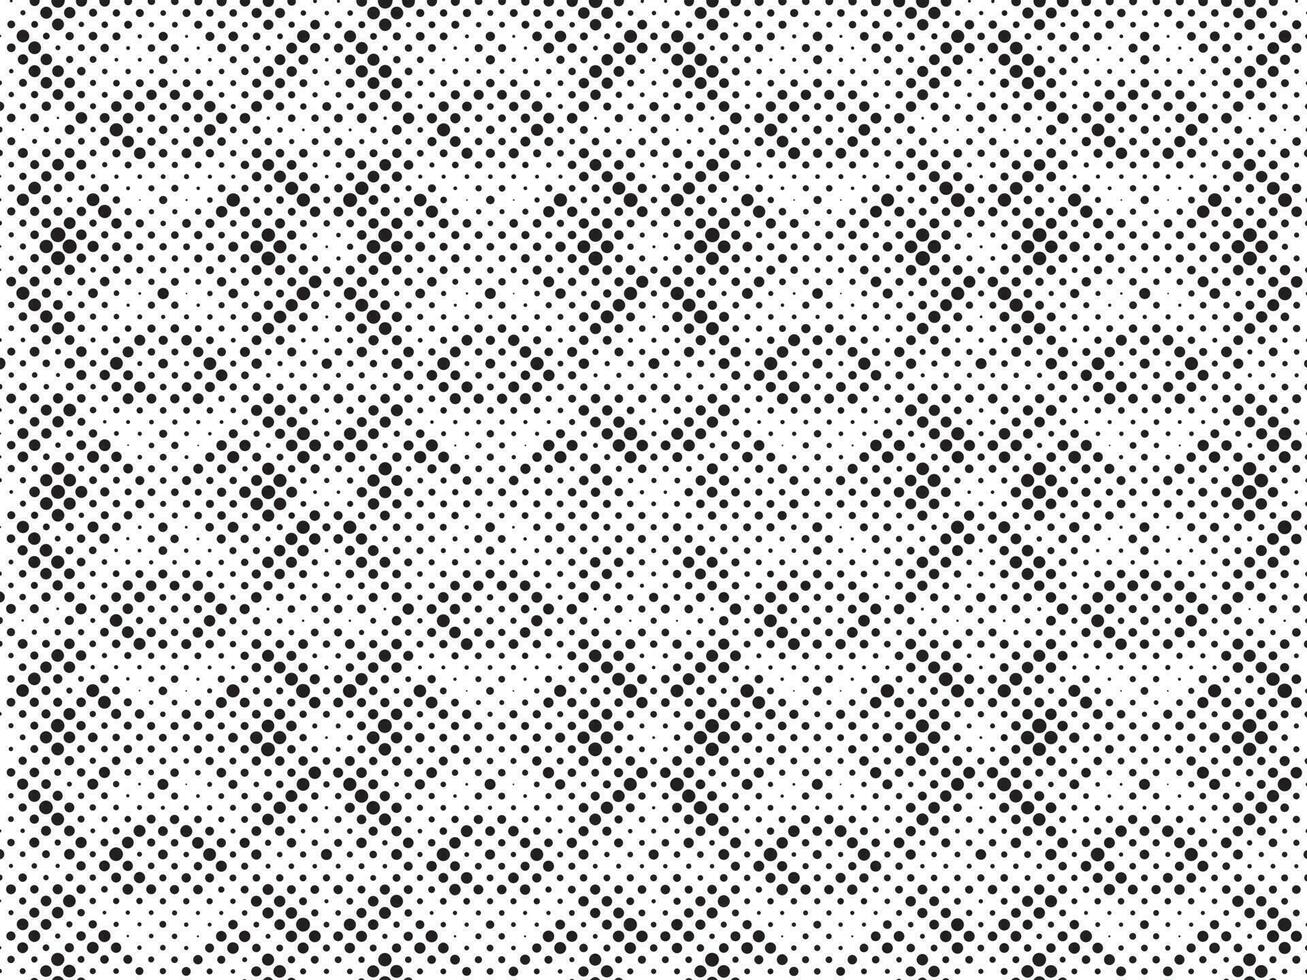 zwart en wit halftone rooster. modern minimalistische meetkundig patroon vector